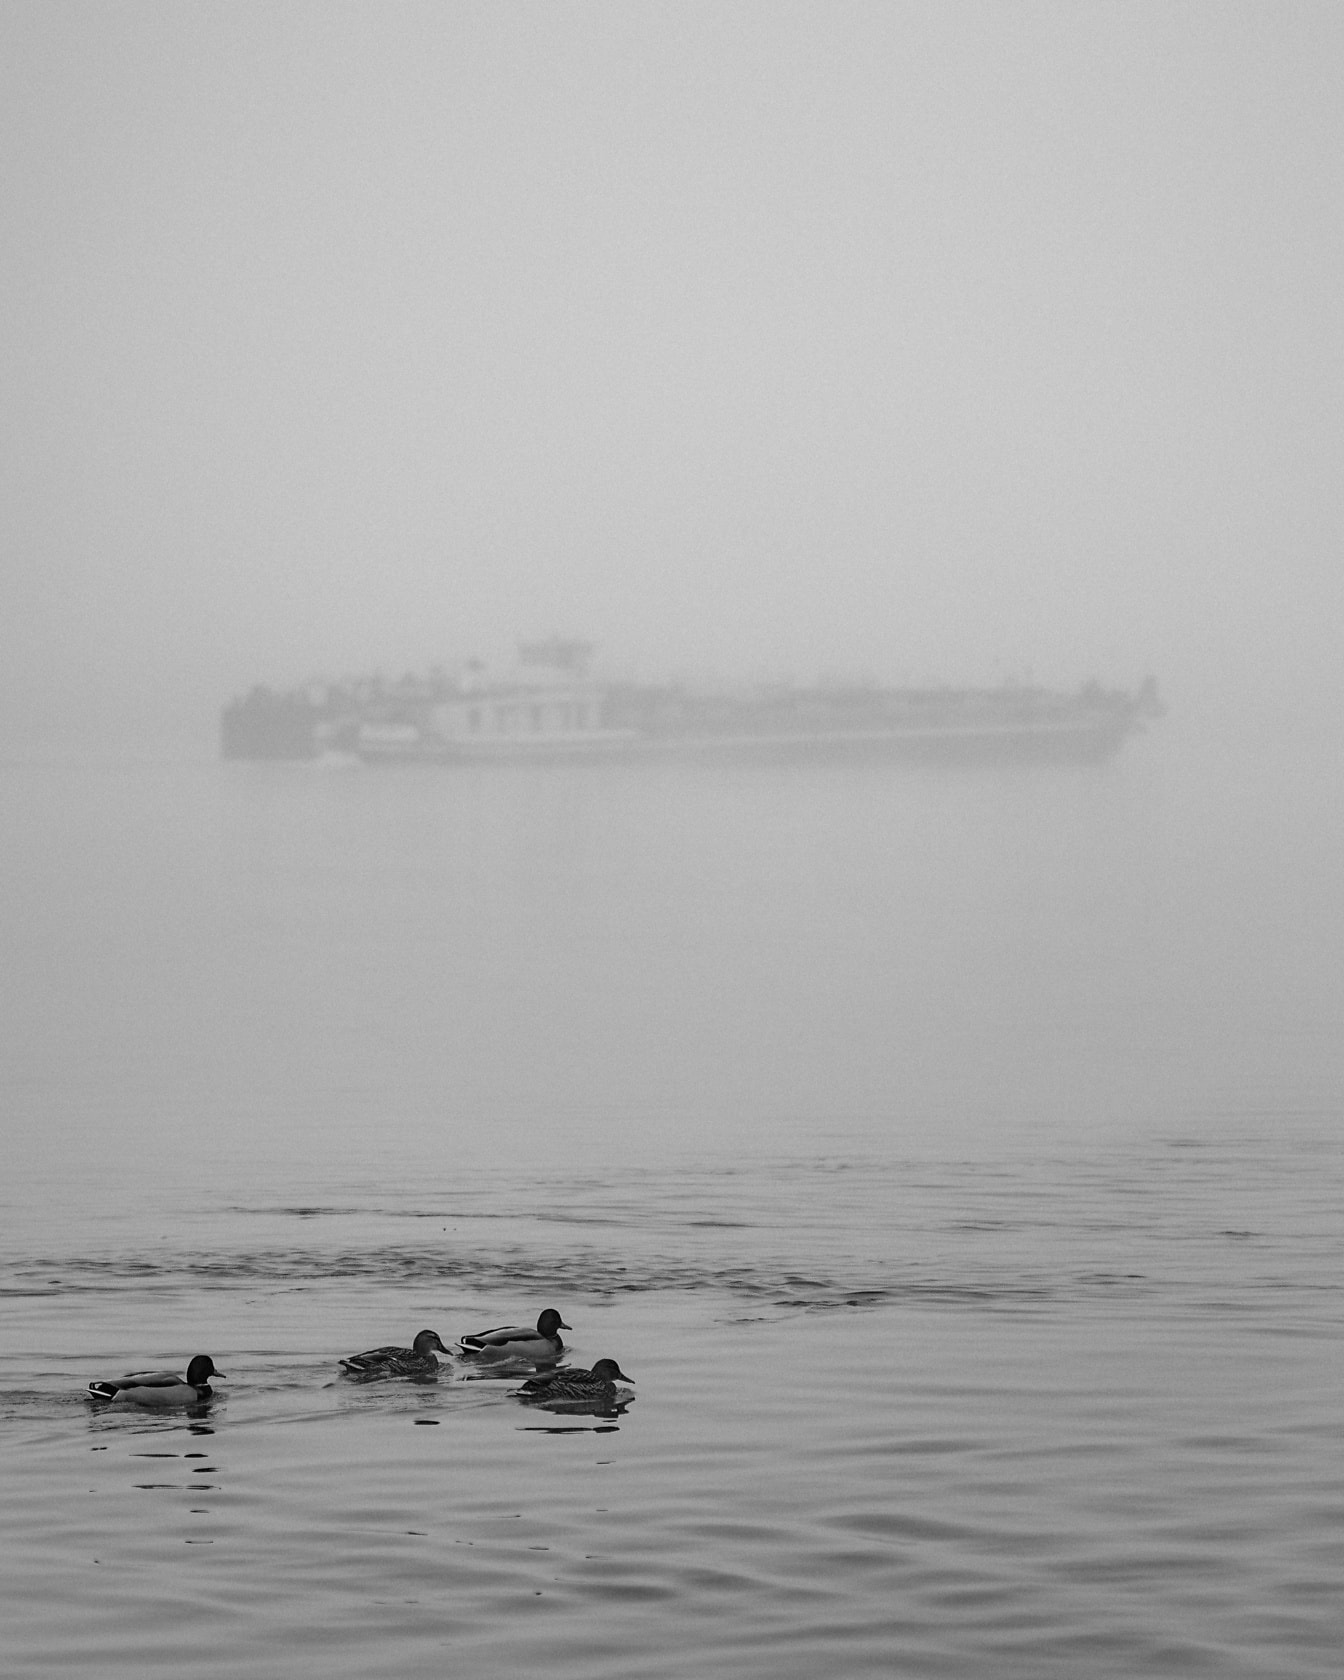 Kacsa úszik a vízben, hajóval sűrű ködben a háttérben